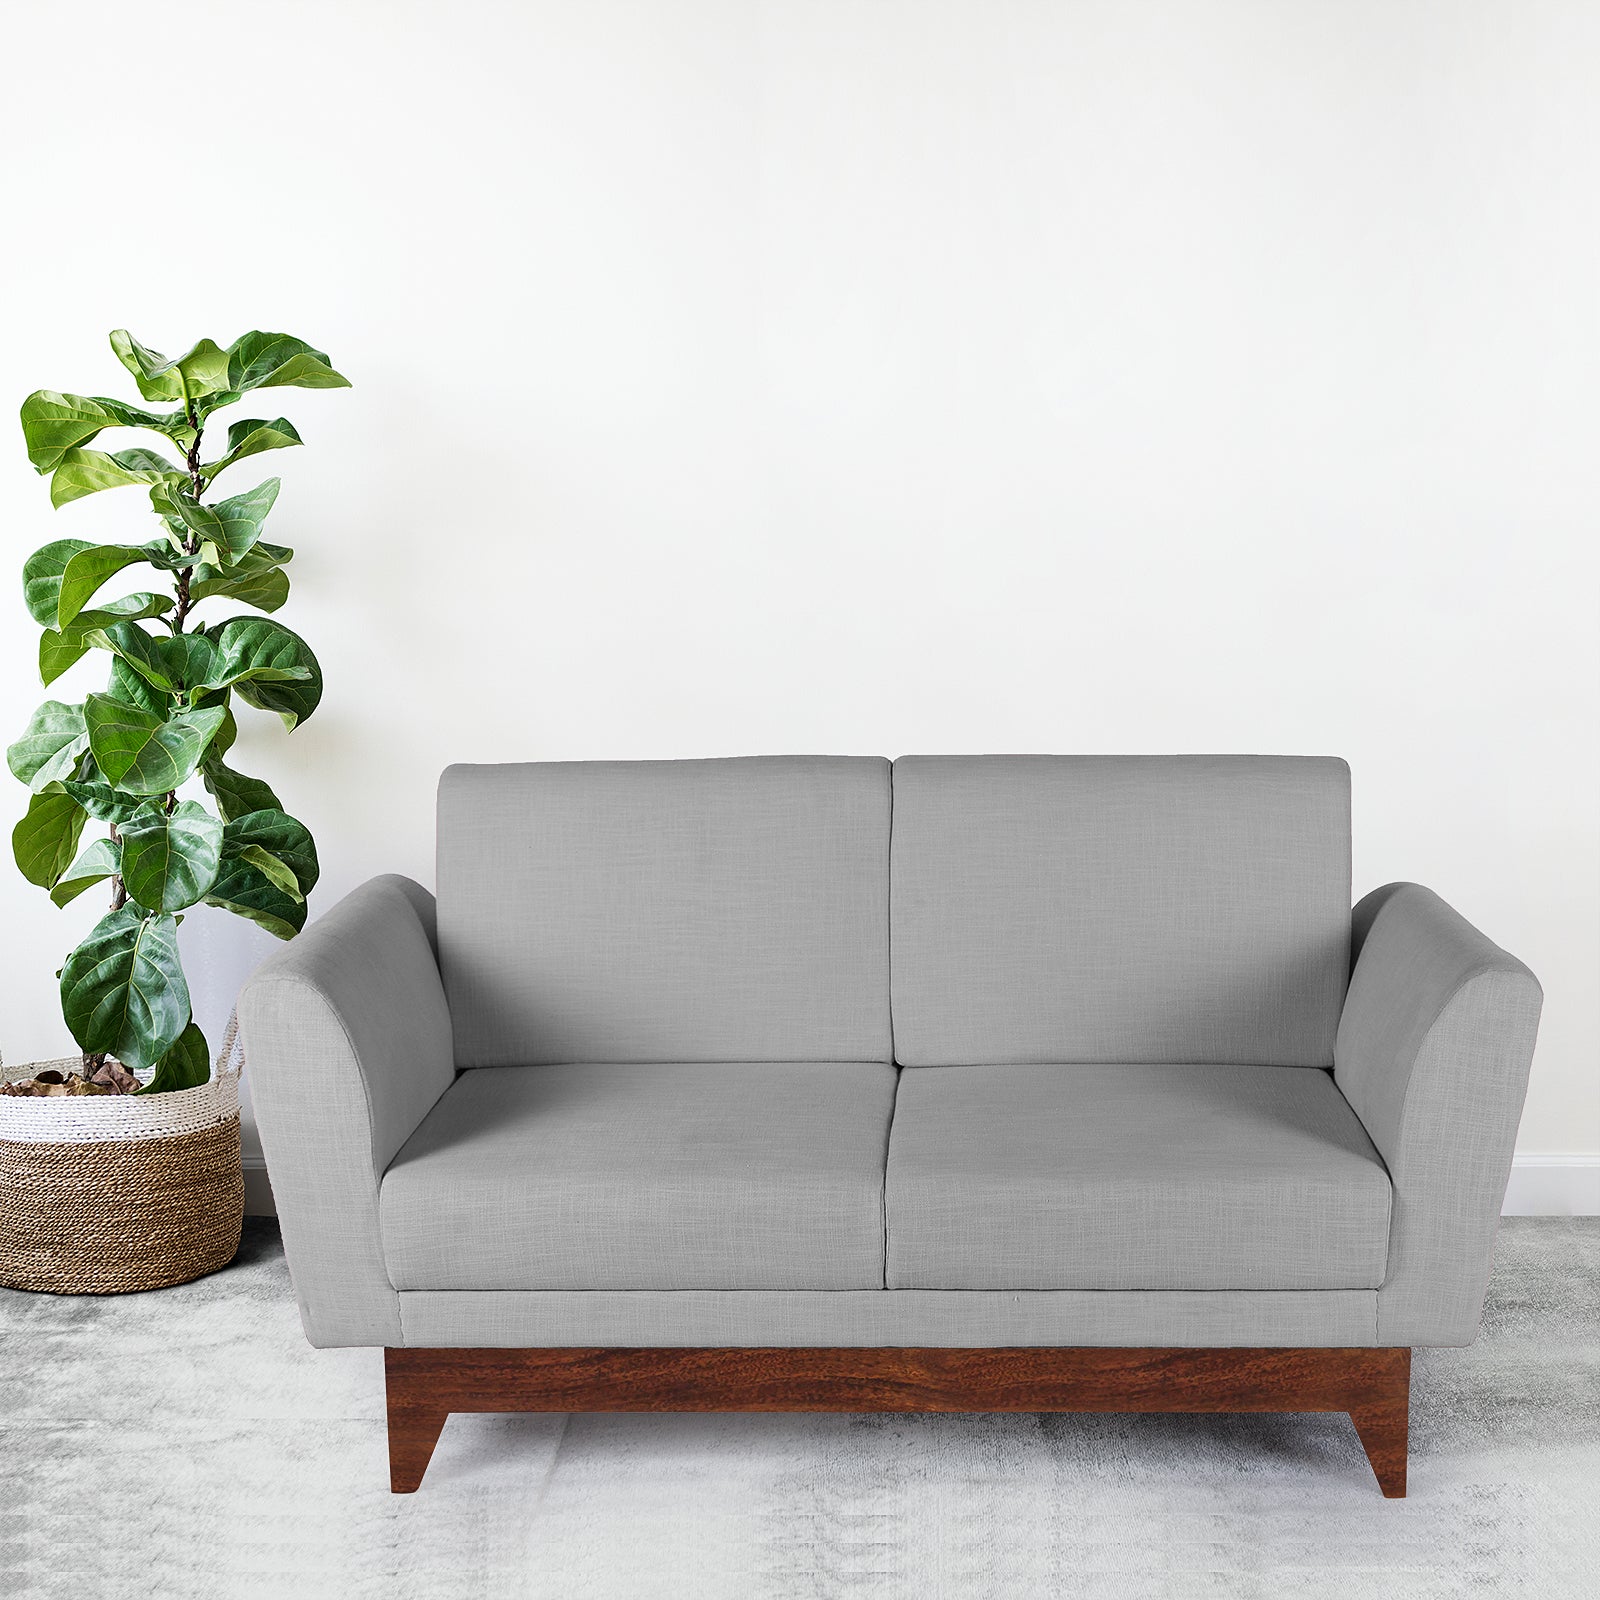 Solid Wood Sofa Sets